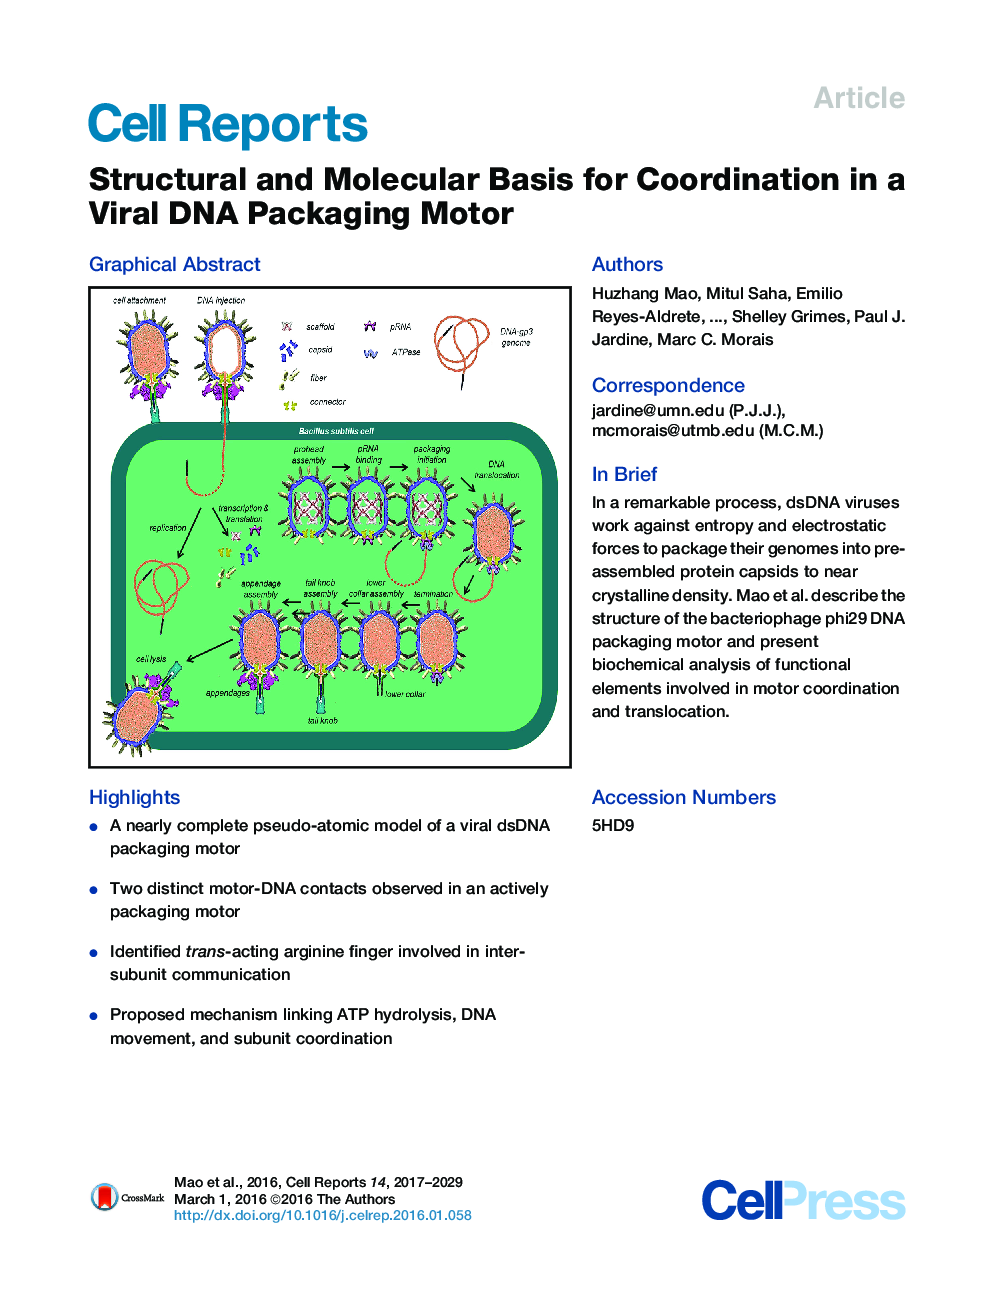 اساس ساختاری و مولکولی برای هماهنگی در یک موتور بسته بندی ویروسی DNA 